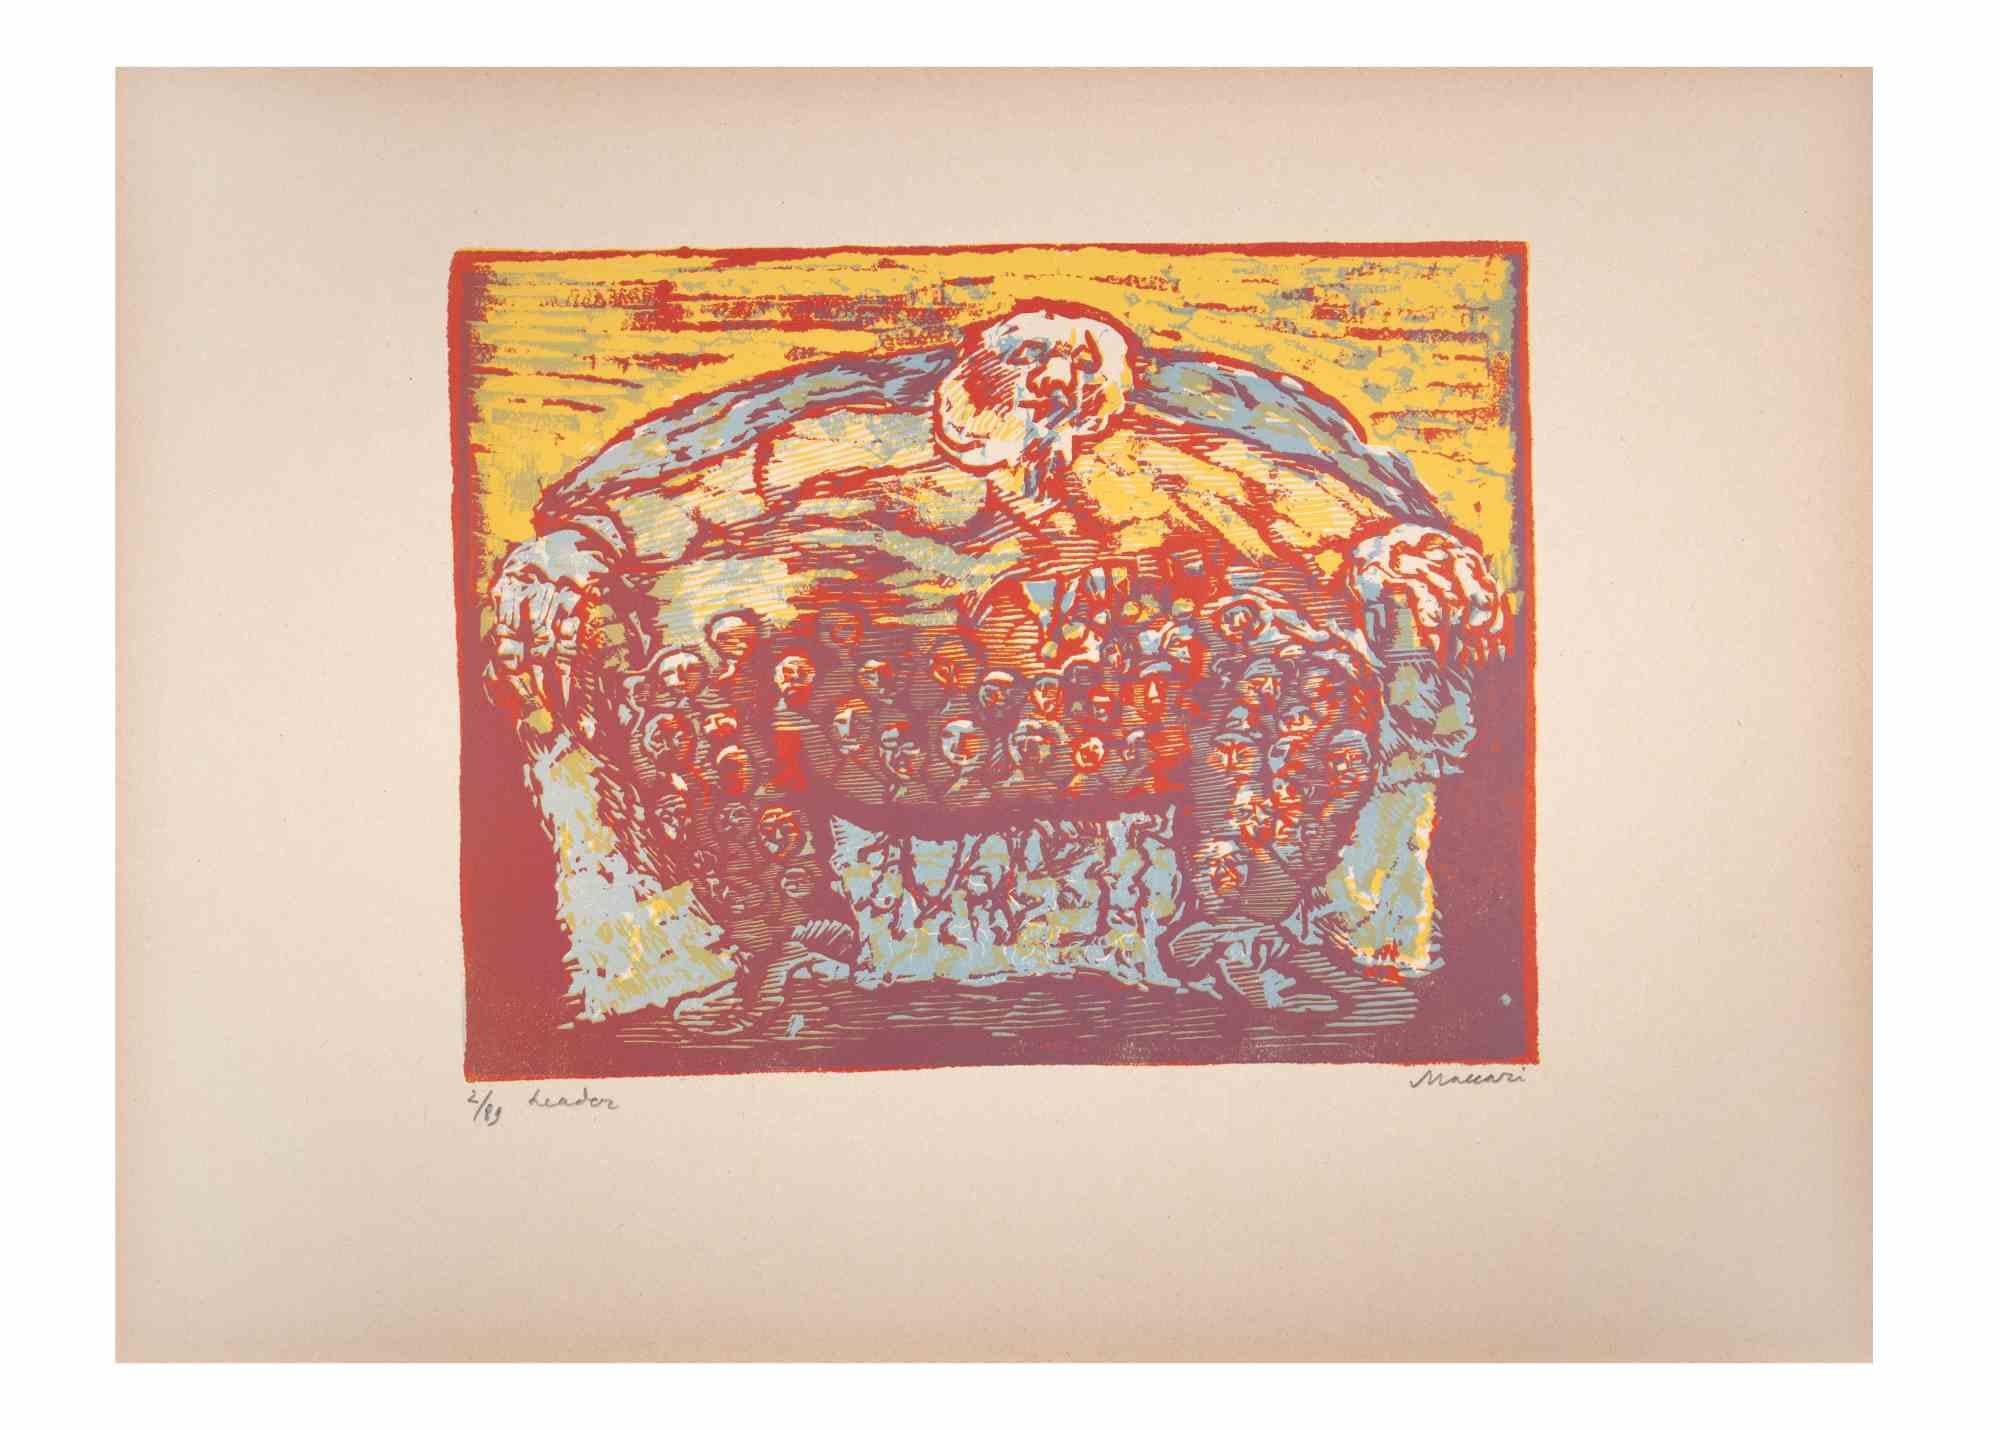 Leader ist ein Kunstwerk von Mino Maccari (1924-1989) aus der Mitte des 20. Jahrhunderts.

Farbiger Holzschnitt auf Papier. Unten handsigniert, nummeriert 2/89 Exemplare und am linken Rand betitelt.

Gute Bedingungen.

Mino Maccari (Siena, 1924-Rom,